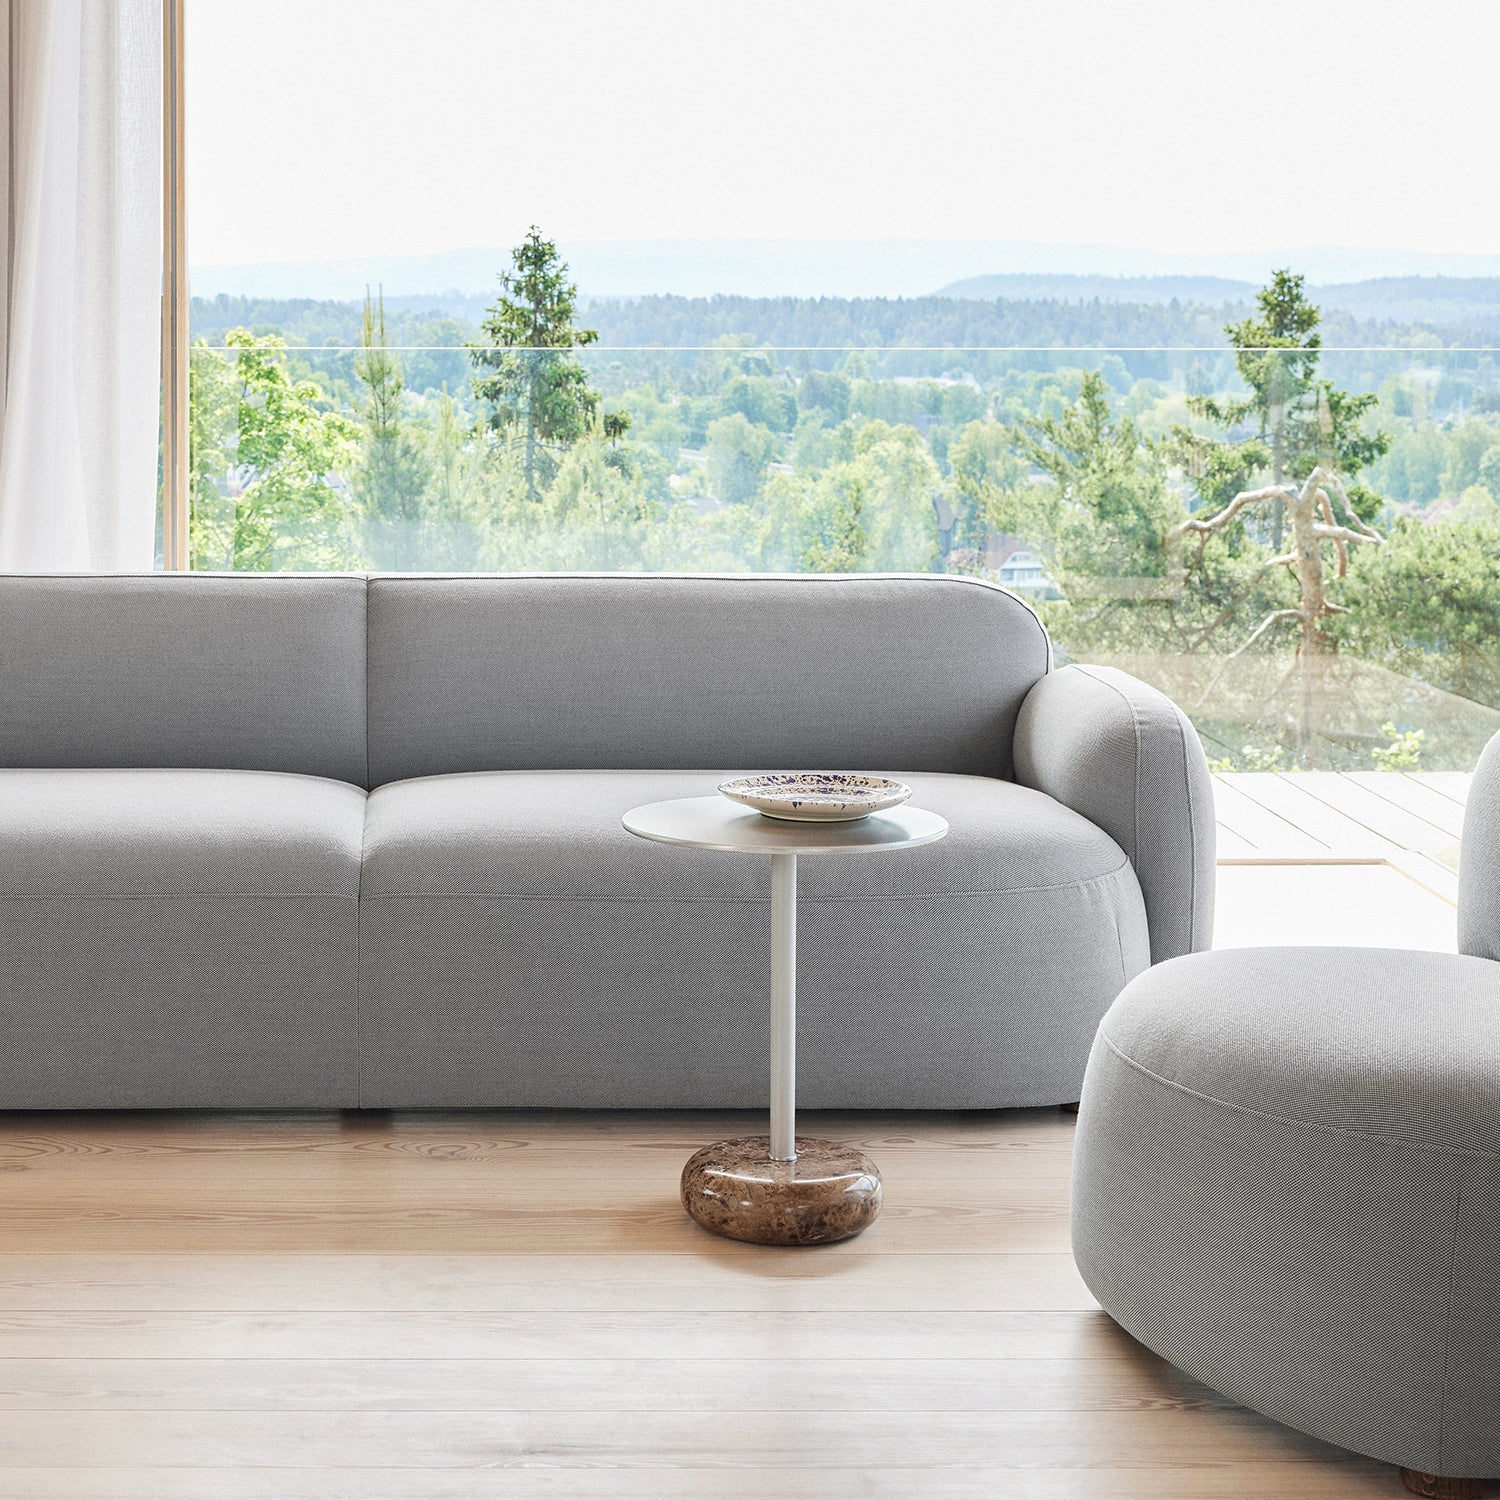 Gem Sofa - The Design Choice